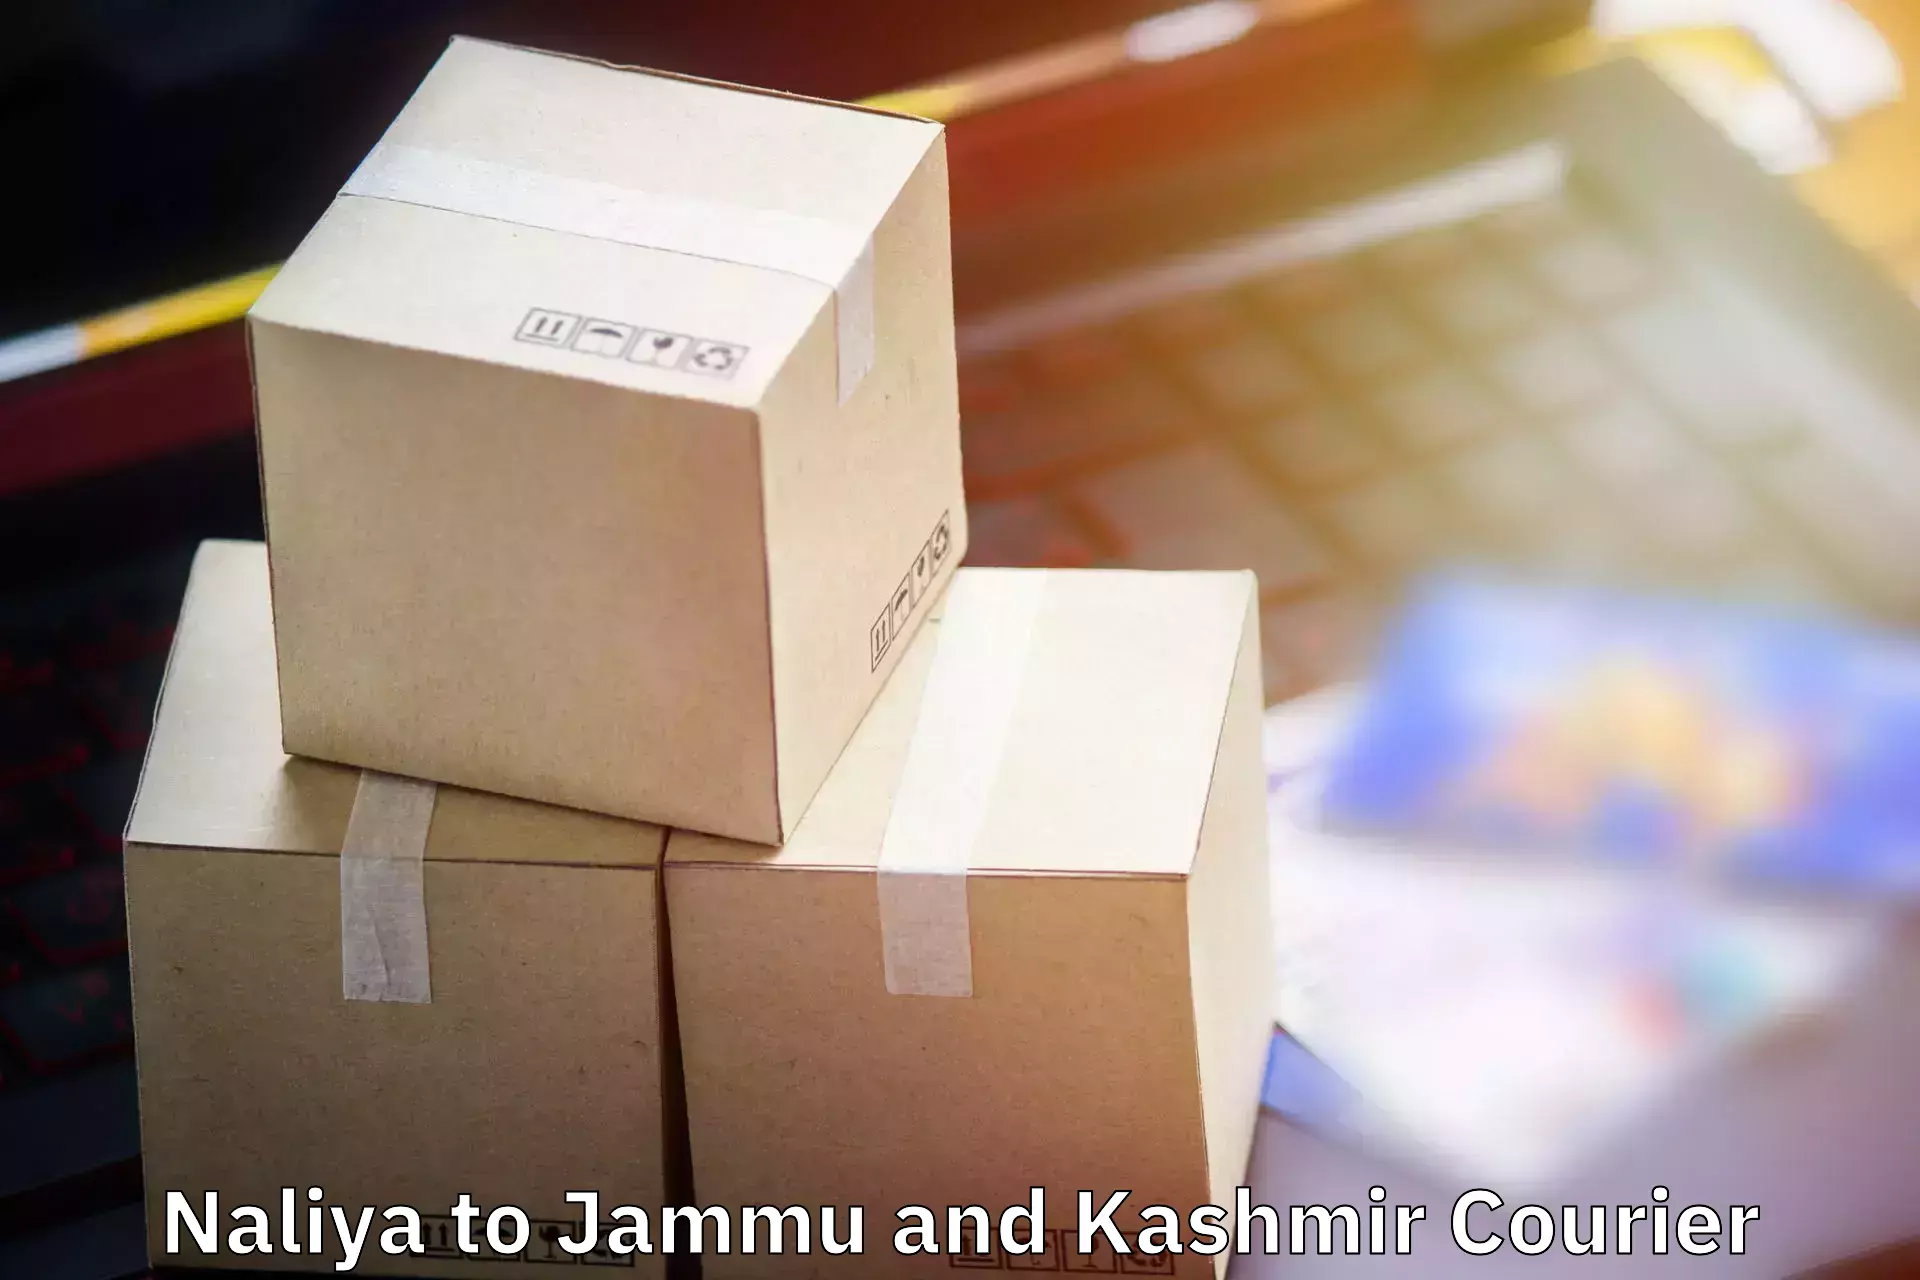 Luggage shipment tracking Naliya to Jammu and Kashmir